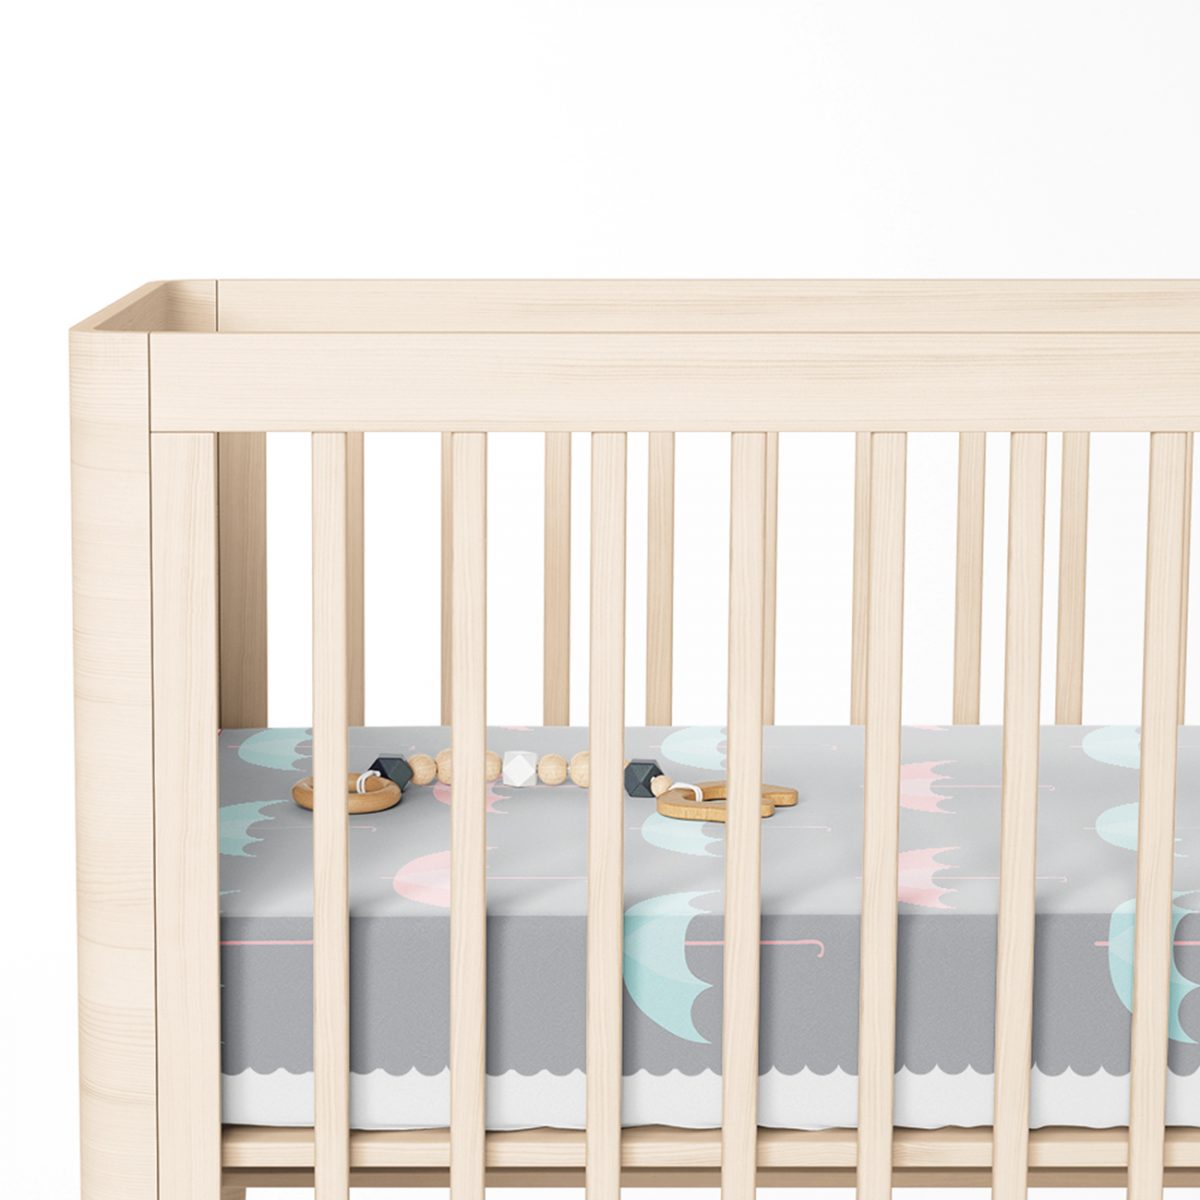 Renkli Şemsiyeler Özel Tasarımlı Bebek Odası Yatak Örtüsü Realhomes